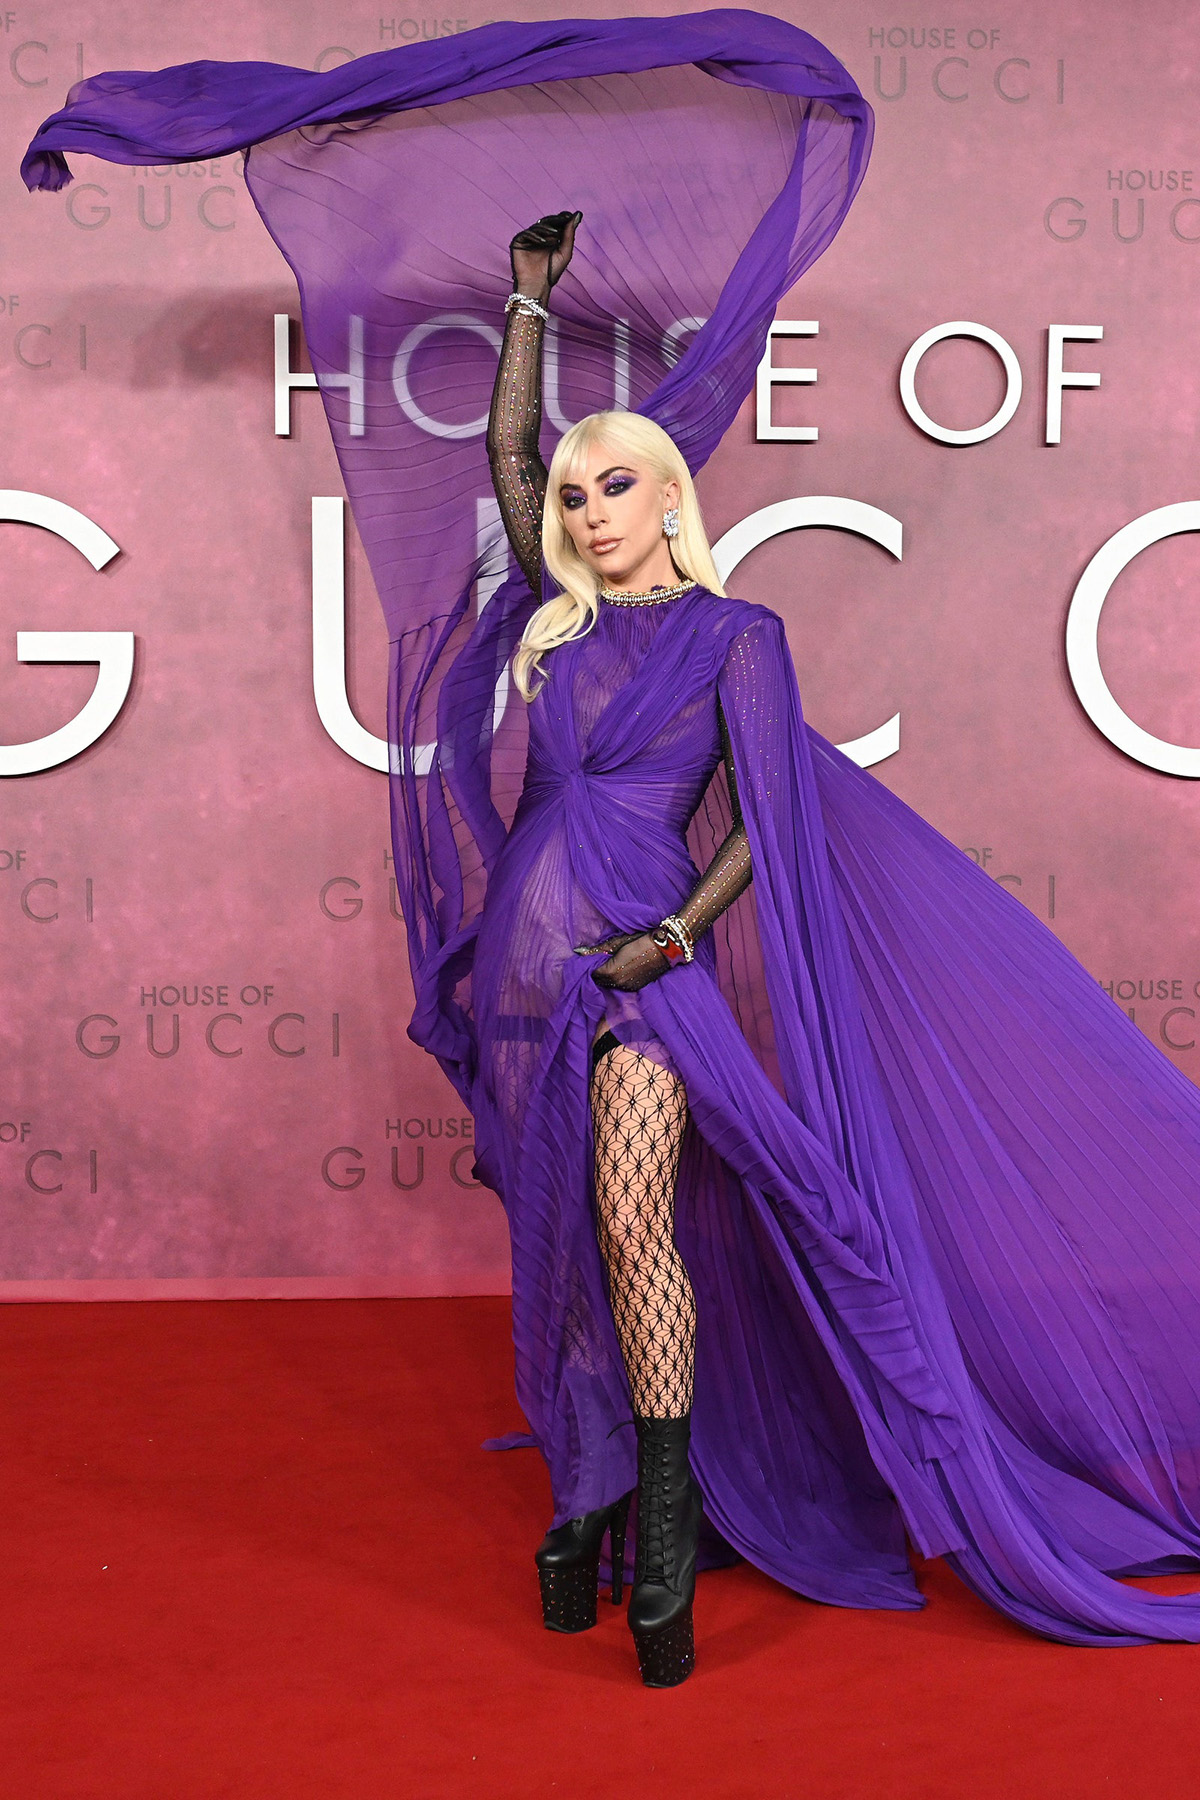 Самые яркие образы Леди Гаги на мировых премьерах фильма Дом Gucci